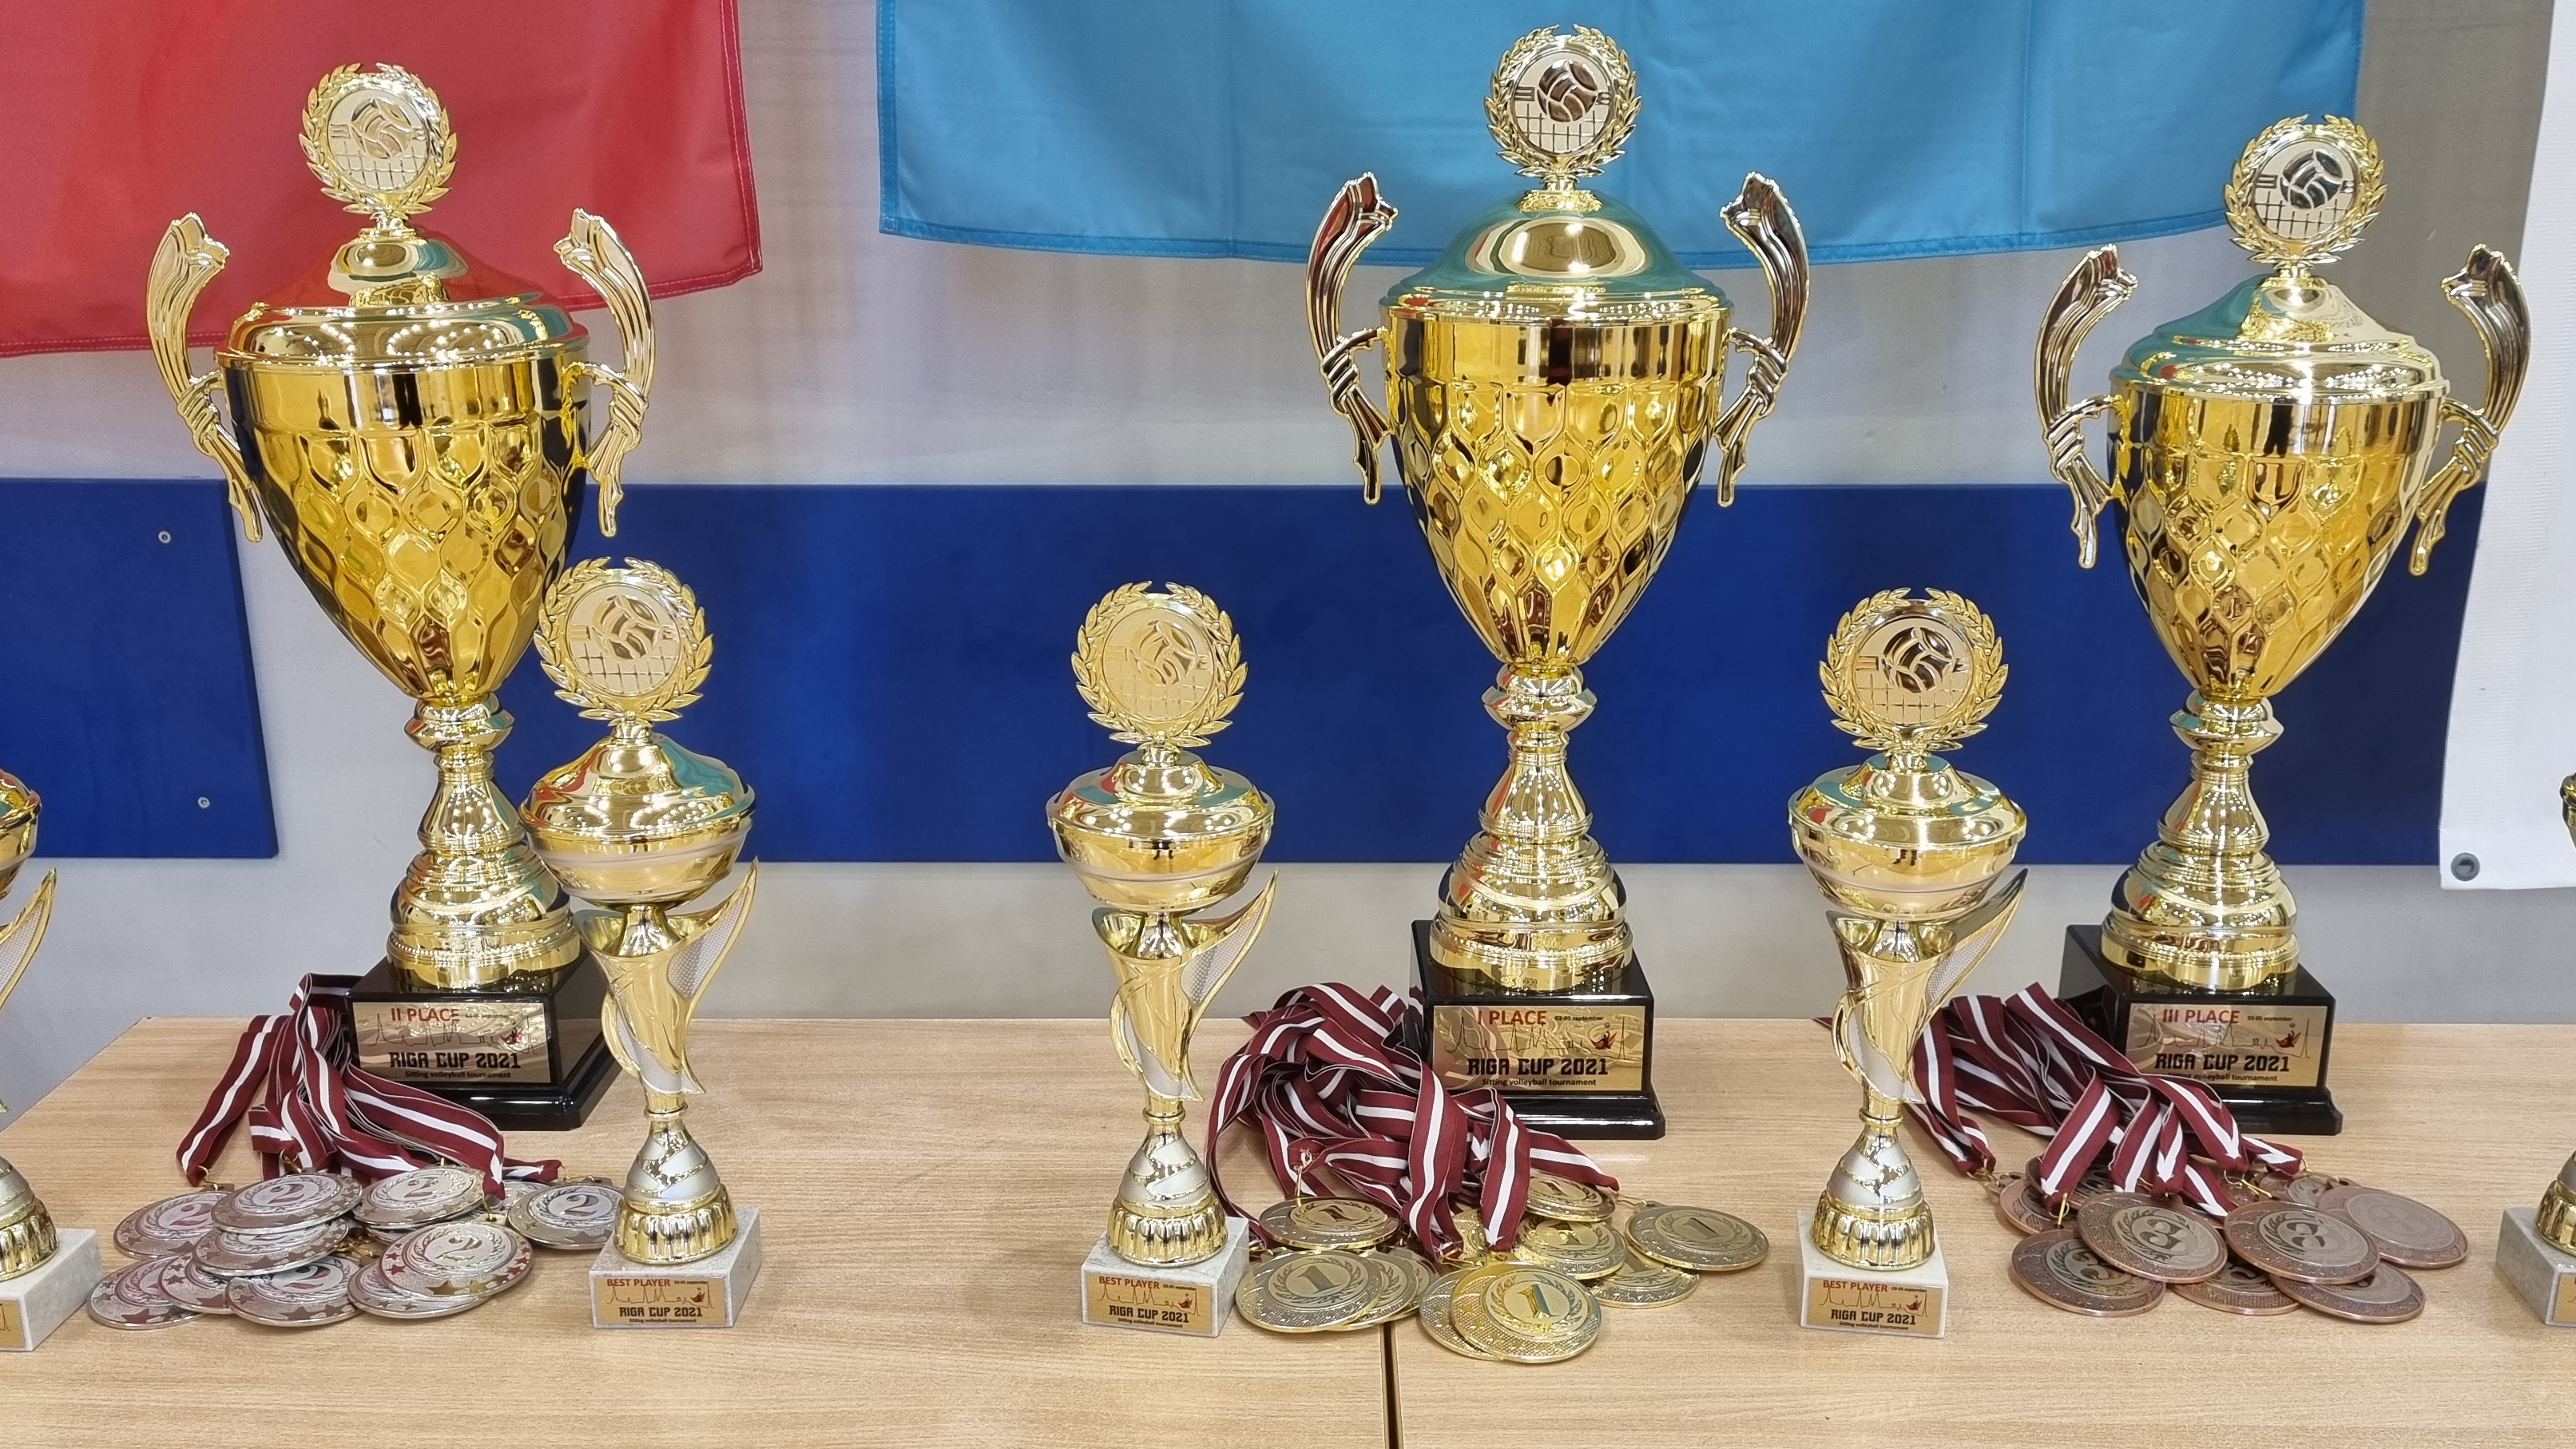 Latvijas sēdvolejbola izlase izcīnījusi 2. vietu "Rīgas Cup 2021" turnīrā